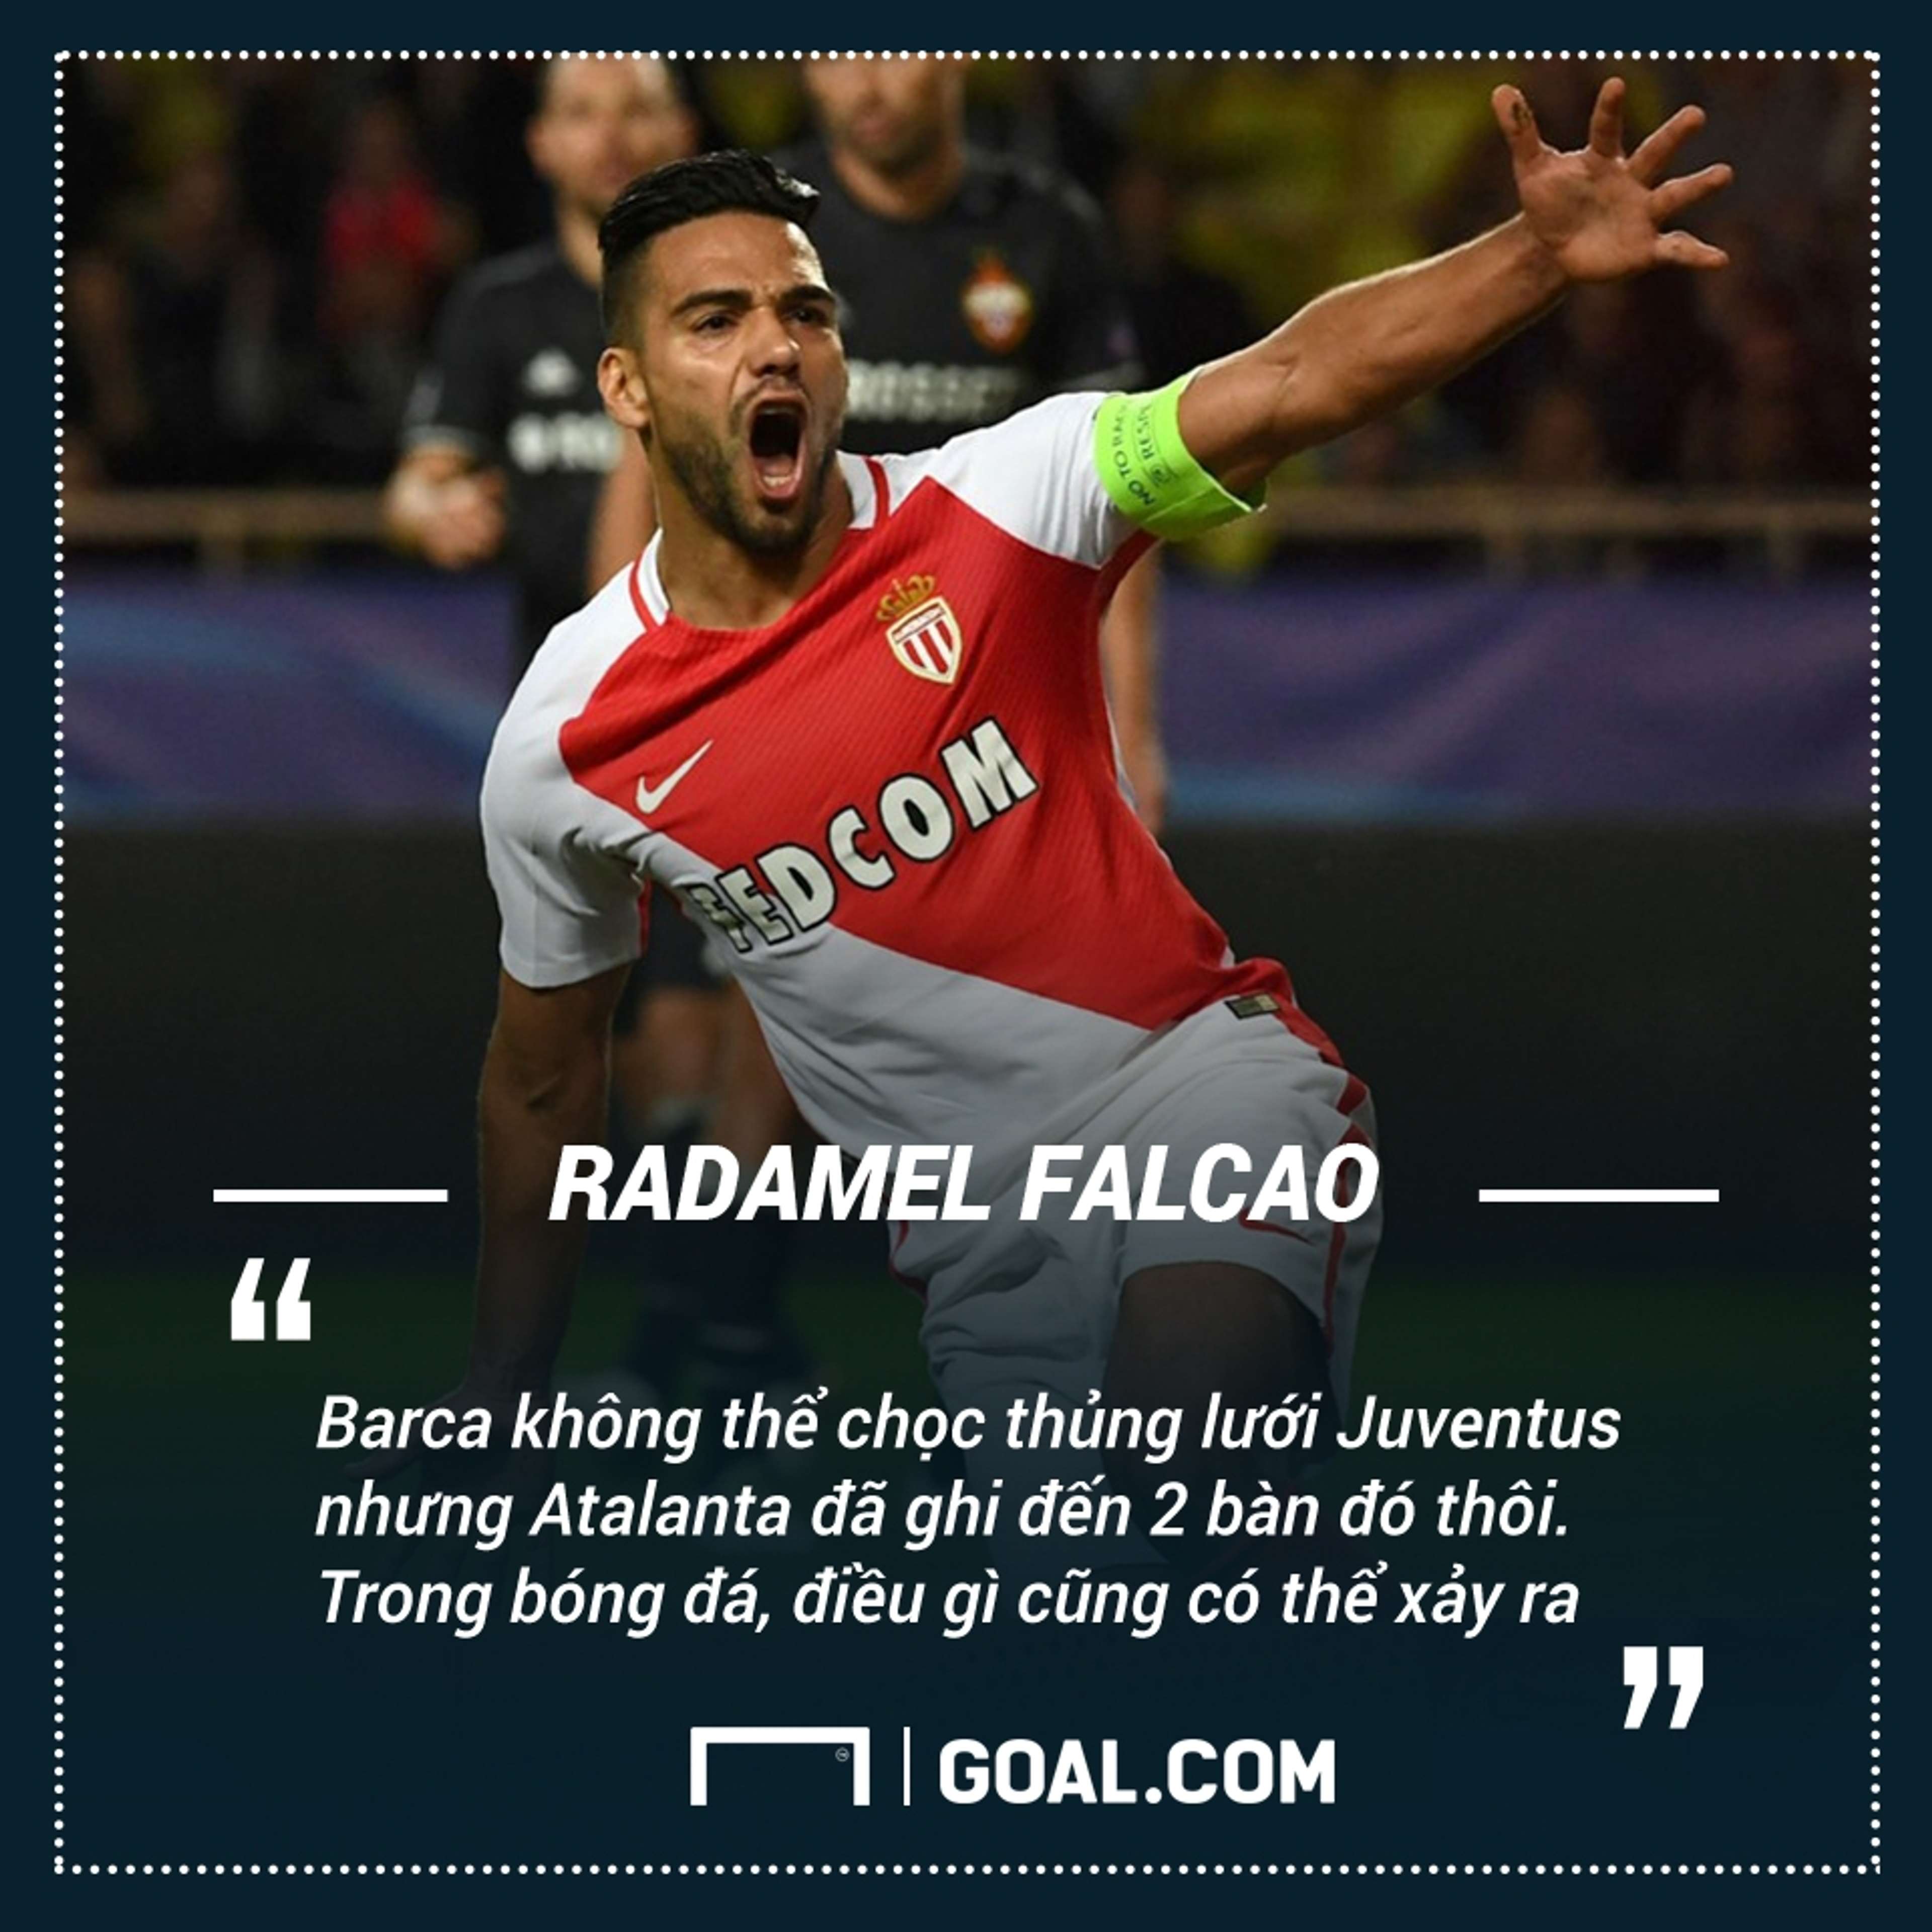 Radamel Falcao's quote